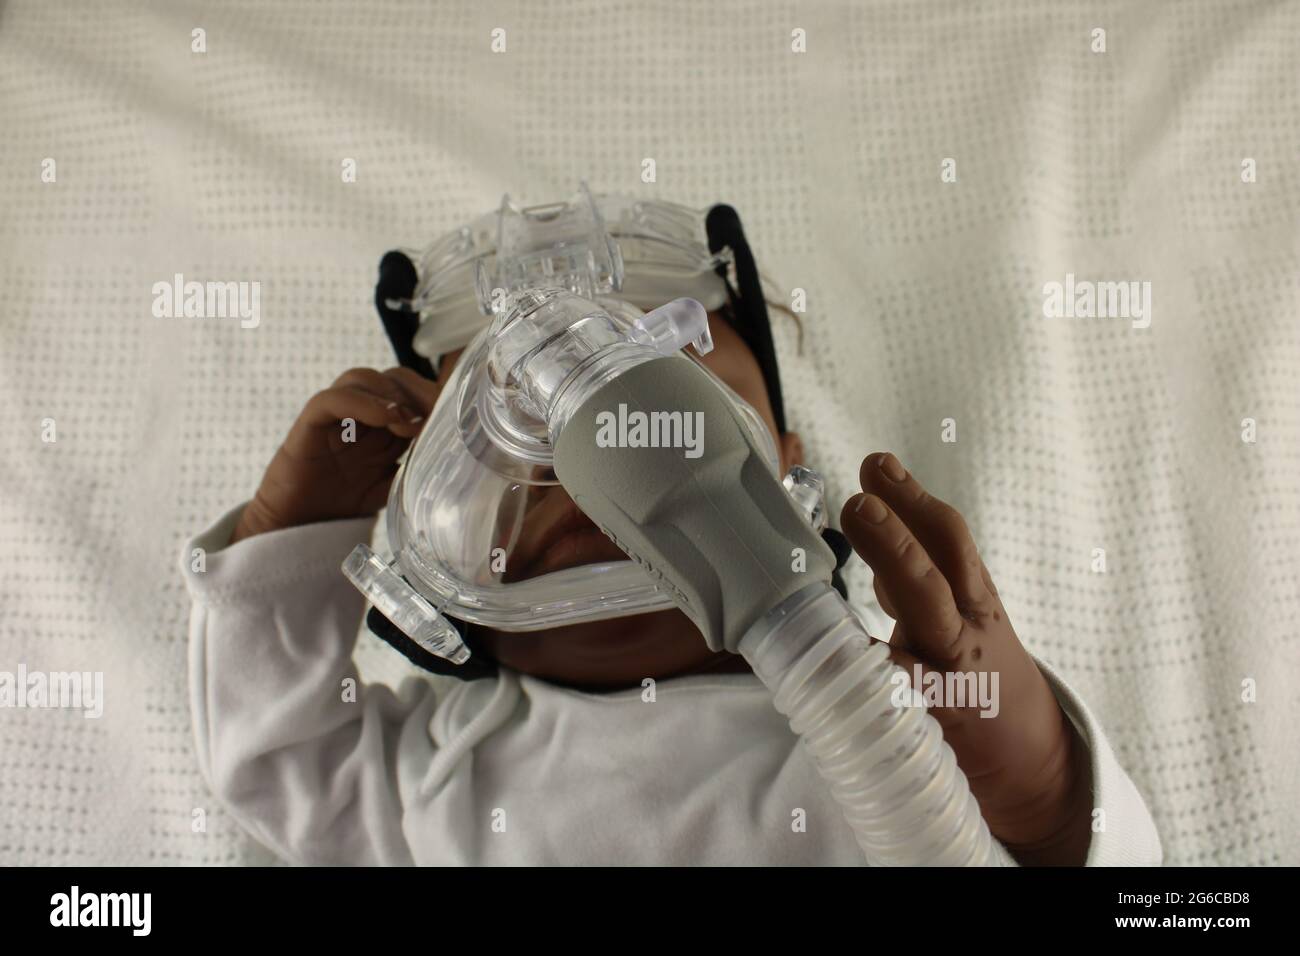 Bambino afroamericano che indossa una maschera nebulizzatrice. Concetto di asma infantile e concetto di virus respiratorio sinciziale, rappresentato da una bambola rinata. Foto Stock